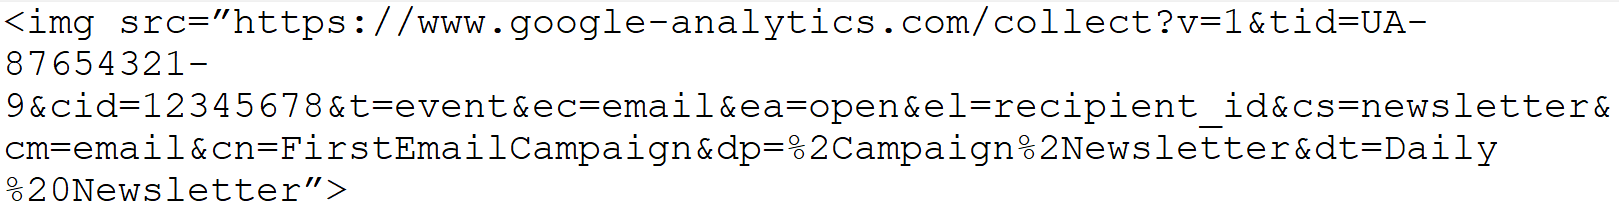 Voorbeeld afbeelding tag url voor invoegen in email bij tracking in Google Analytics